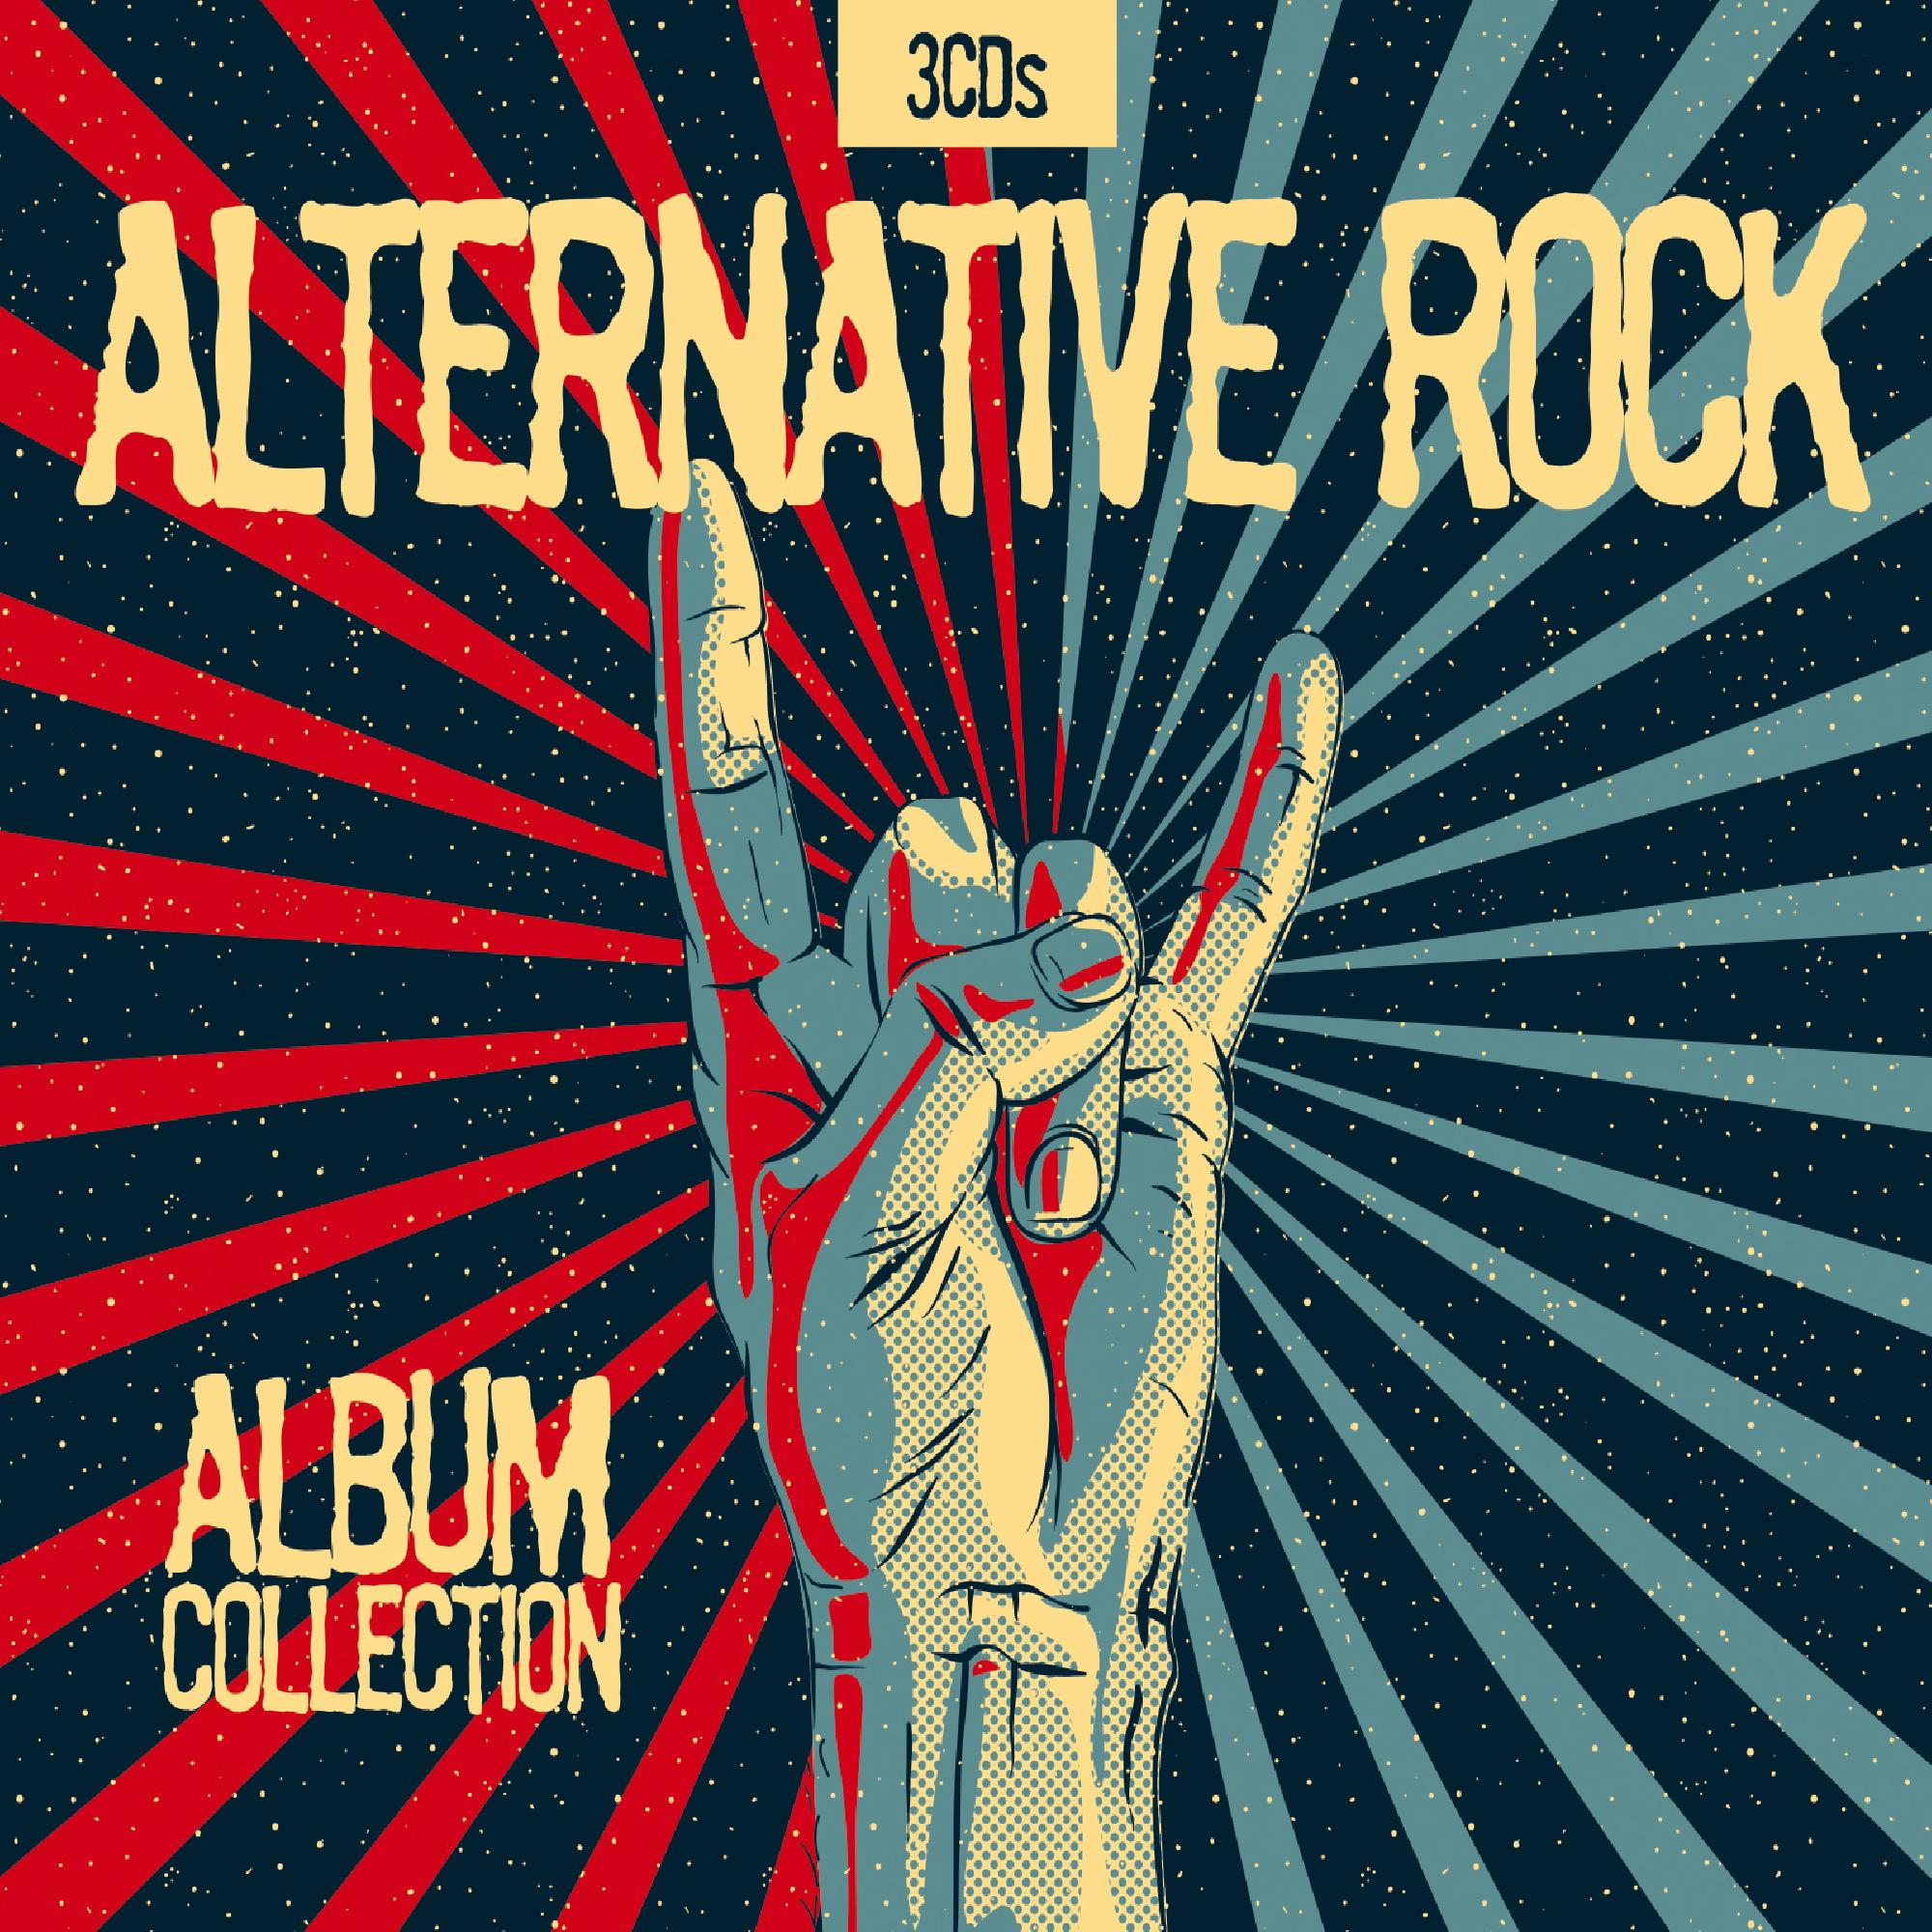 Альтернативный рок лучшее. Рок обложка. Альтернативный рок. Альтернативная обложка. Alternative Rock обложка.